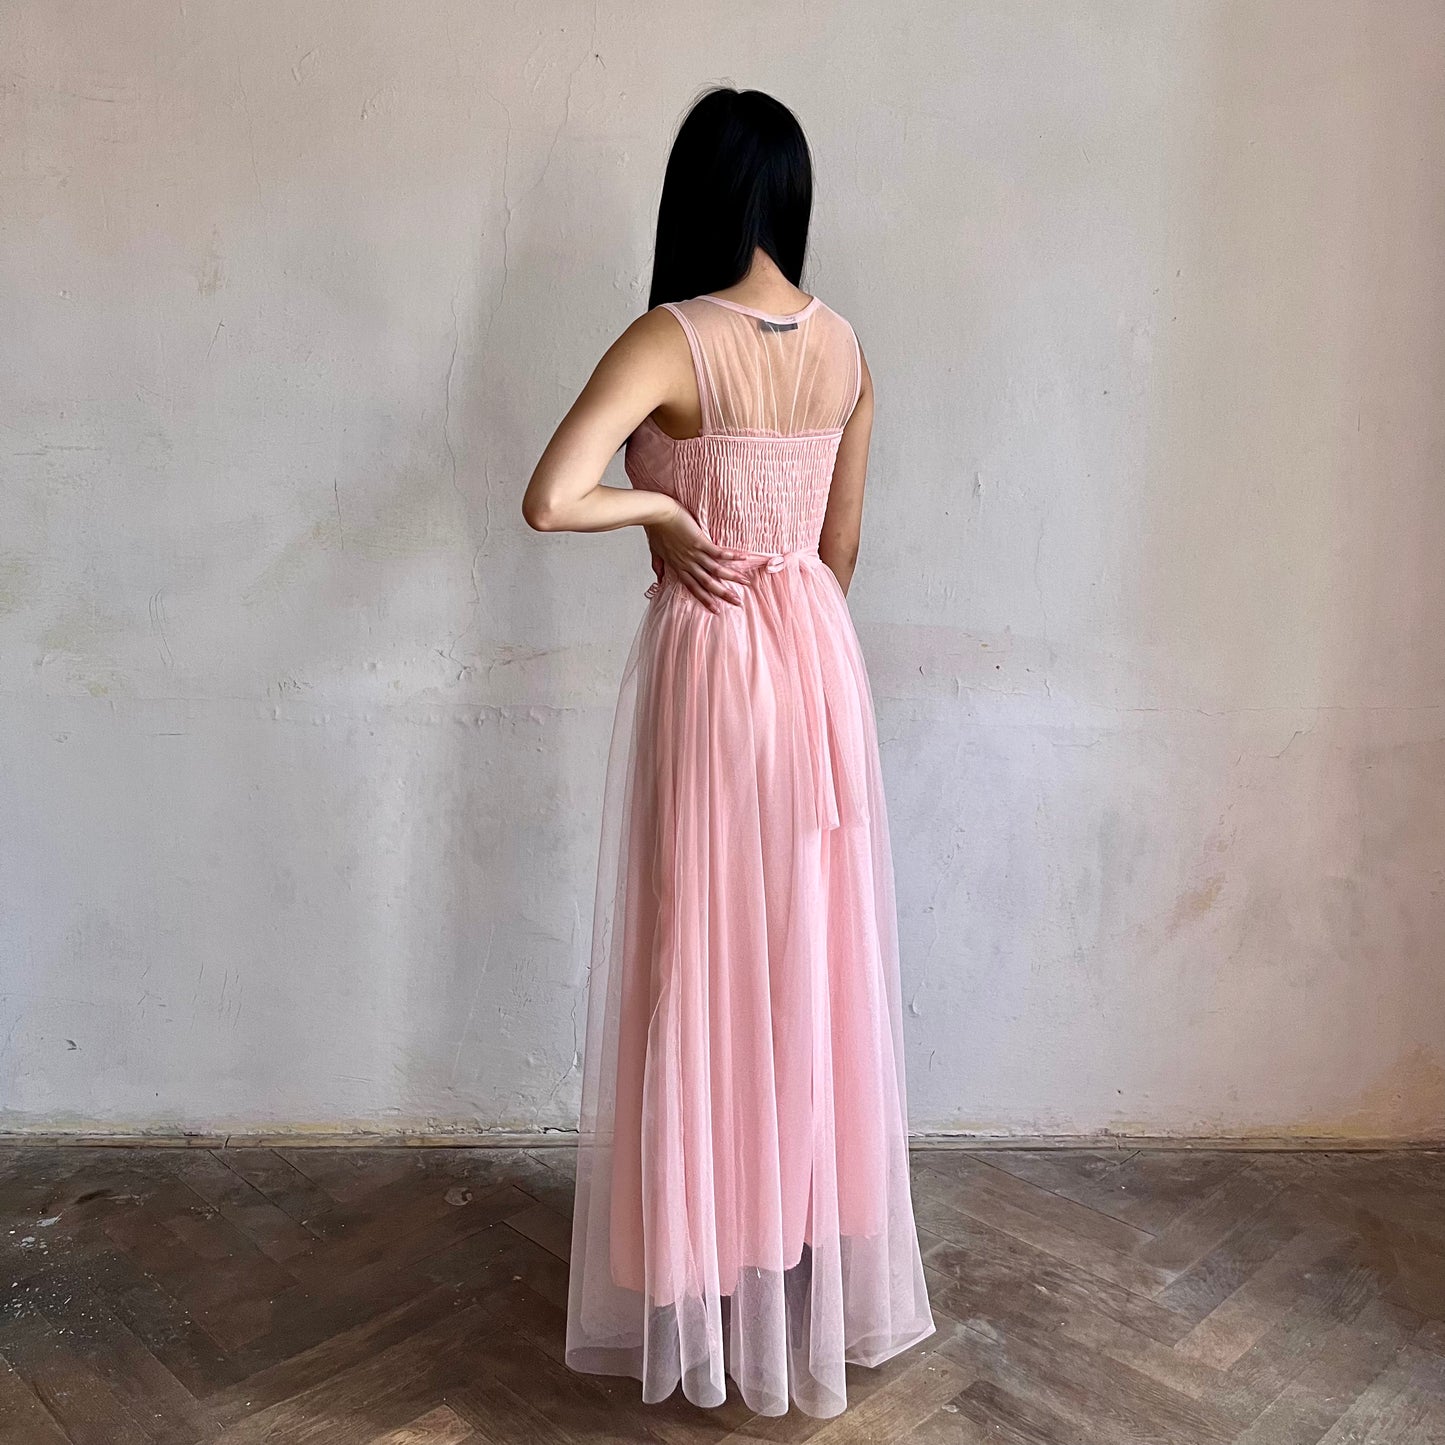 Modelka asijského původu pózující z boku oblečená ve světle růžových společenských šatech